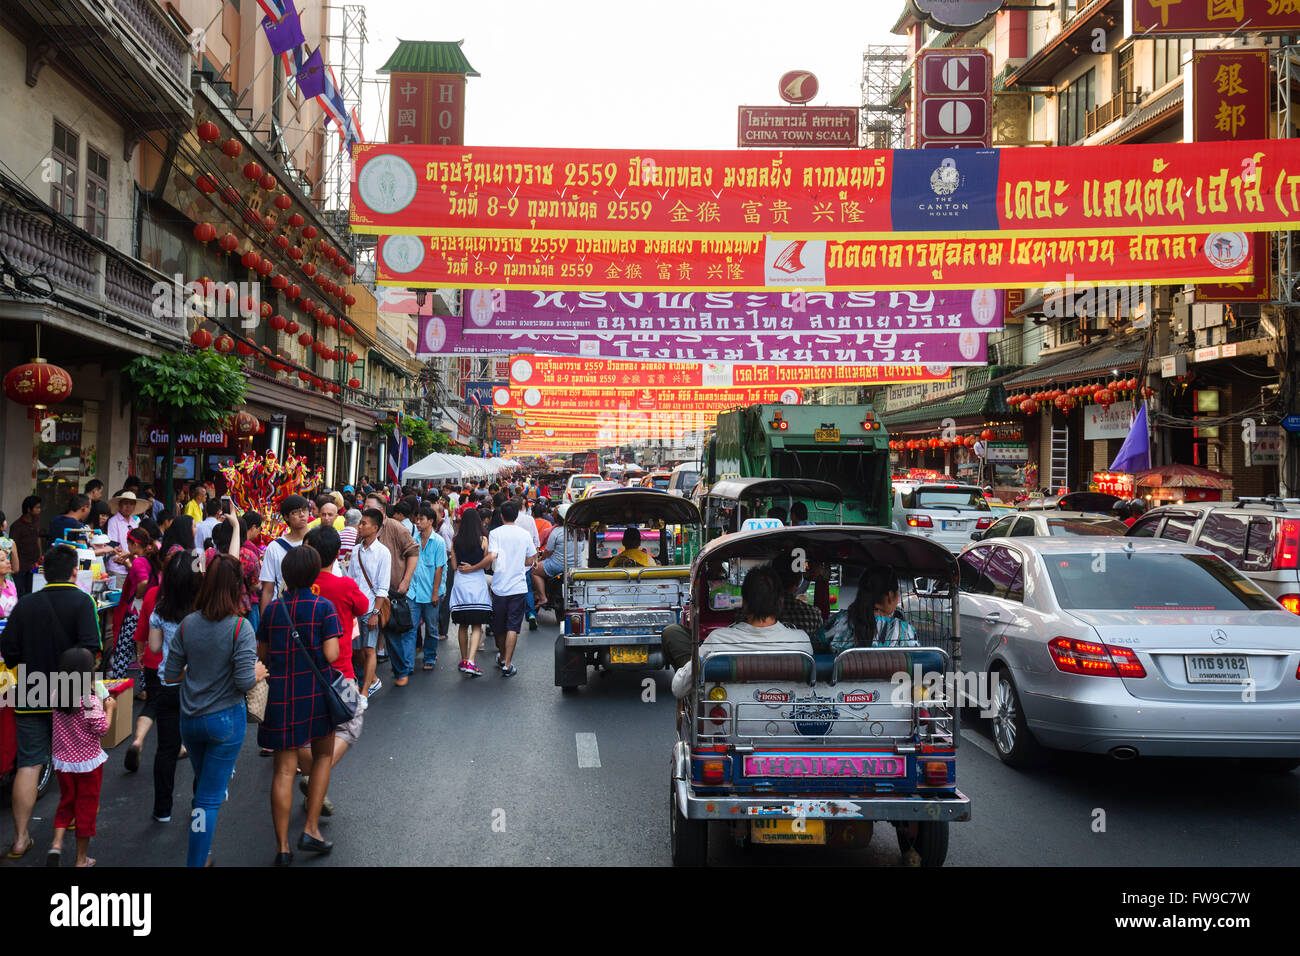 El tráfico pesado en Yaowaraj Road, Tuk Tuks y pancartas anunciando el festival de Año Nuevo Chino, Chinatown Foto de stock